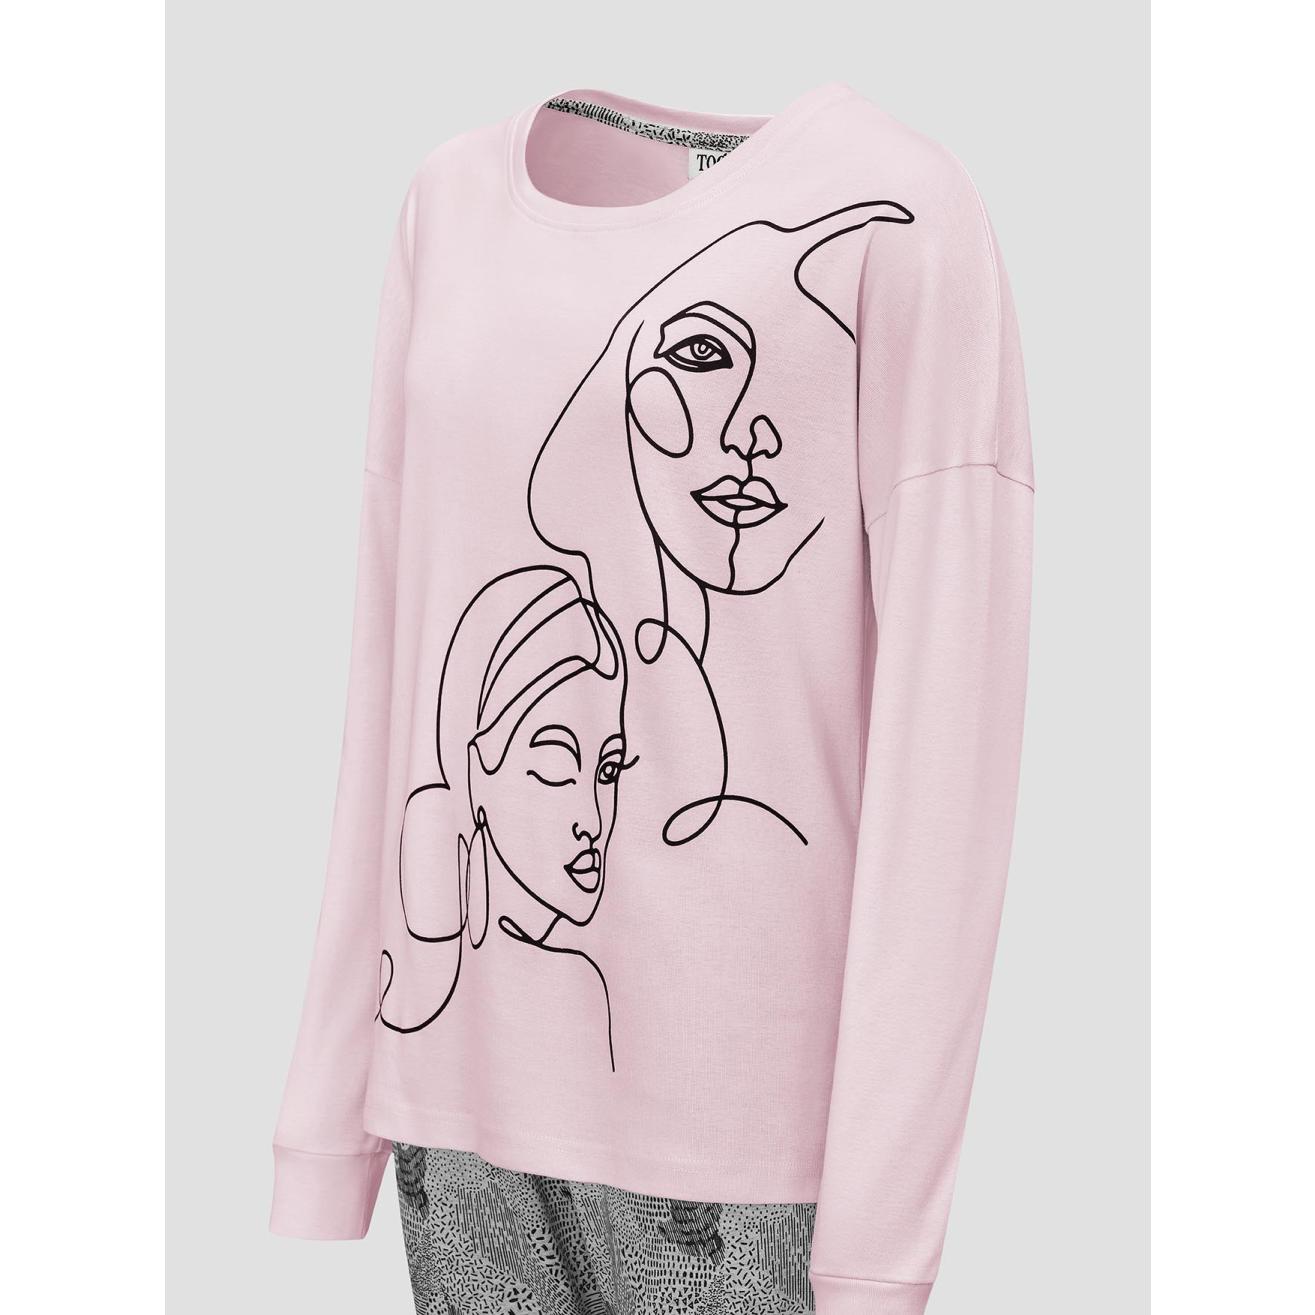 Пижама для девочек Togas Teens Кэрри розово-серая 152 см, цвет розовый, размер 152 см - фото 3